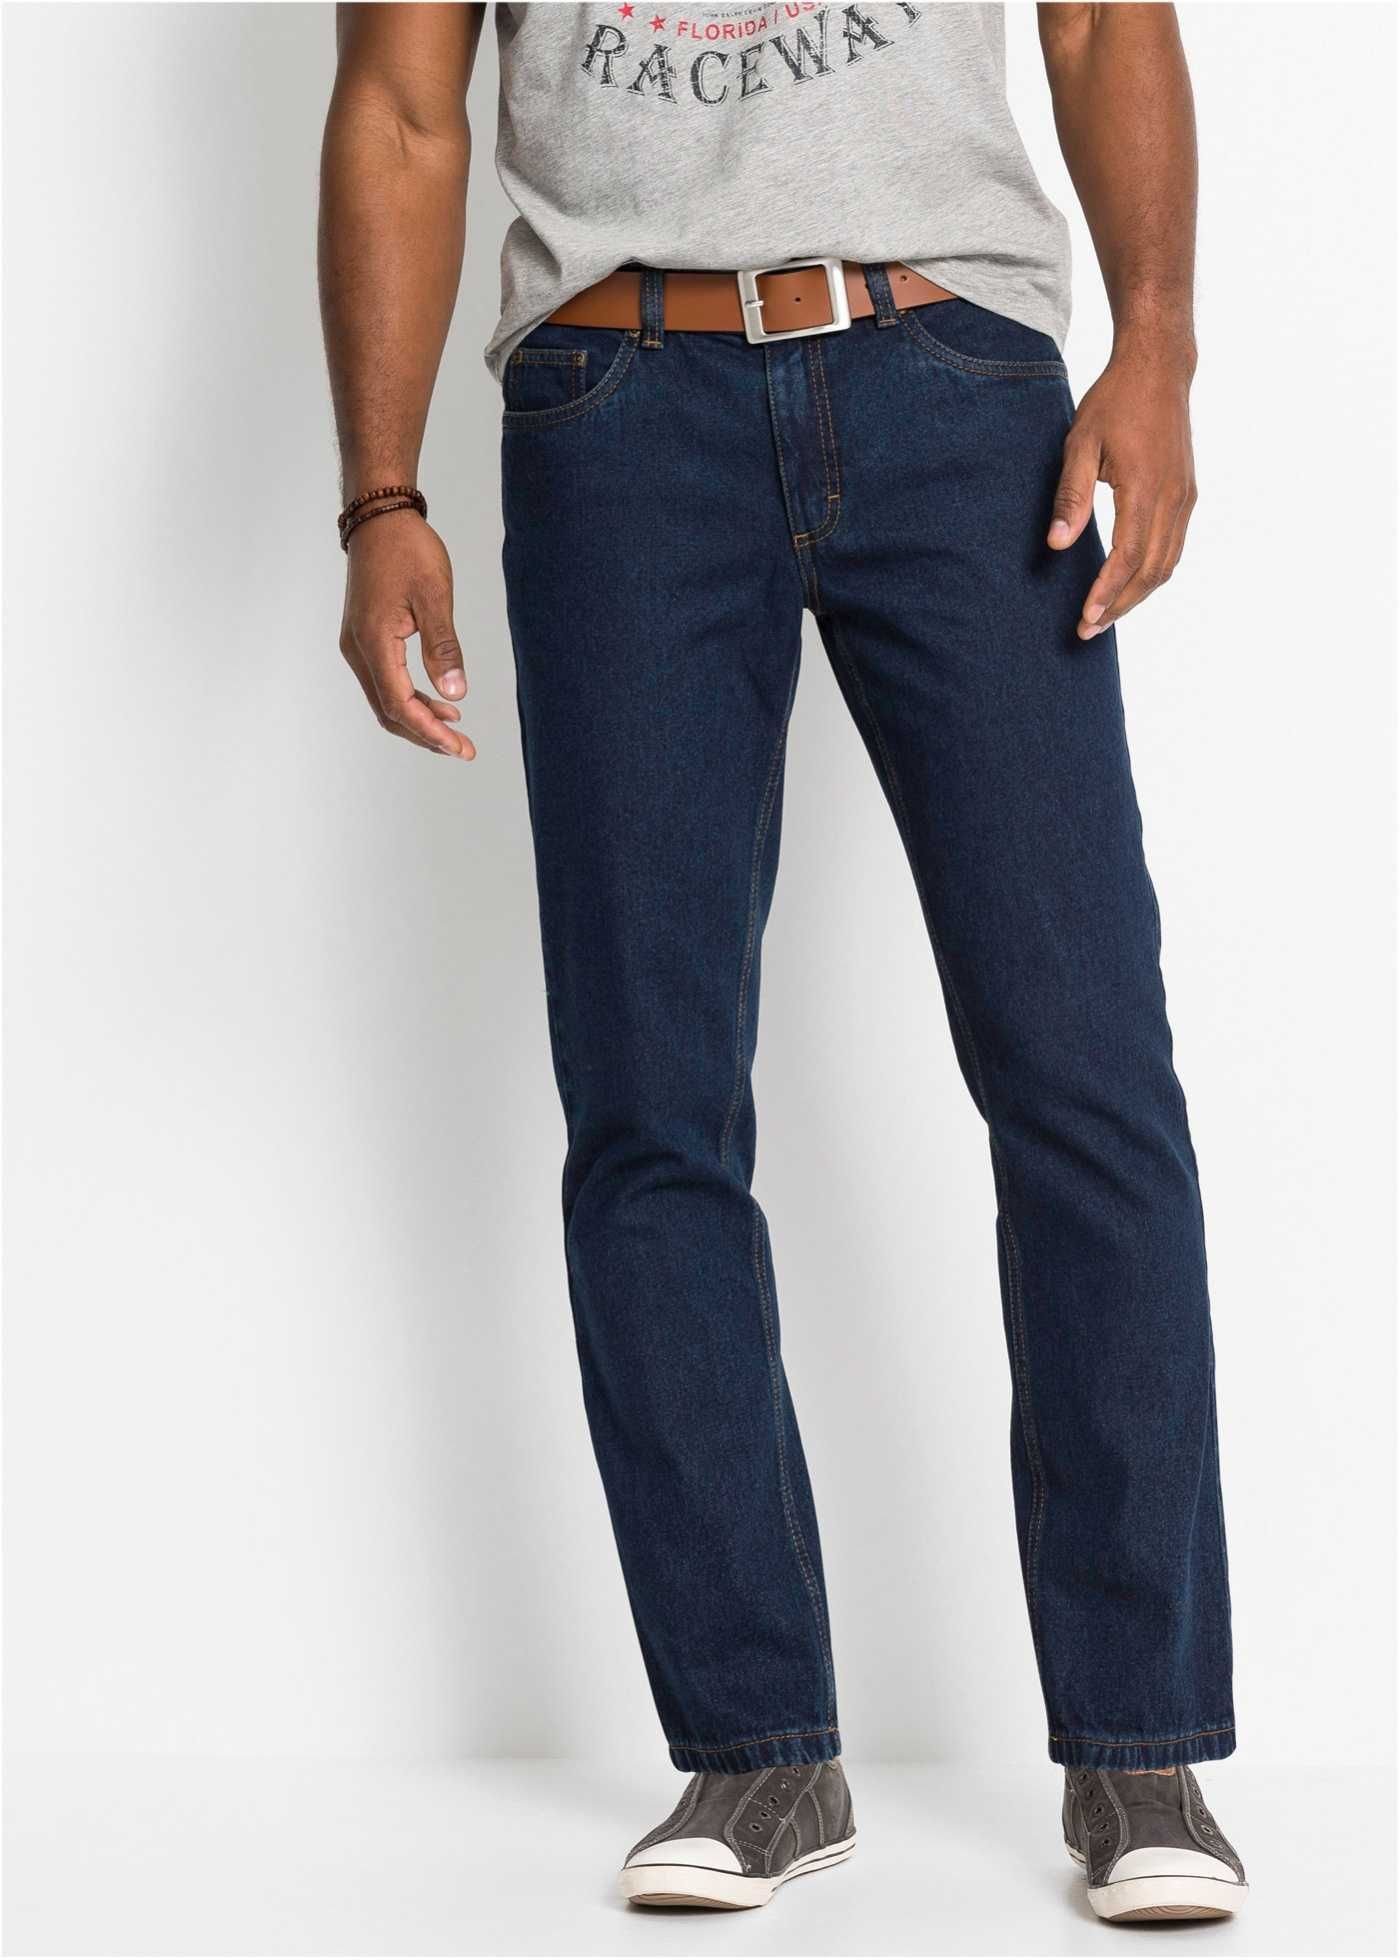 Spodnie męskie jeans Bawełna marki J Baner Rozmiar 52